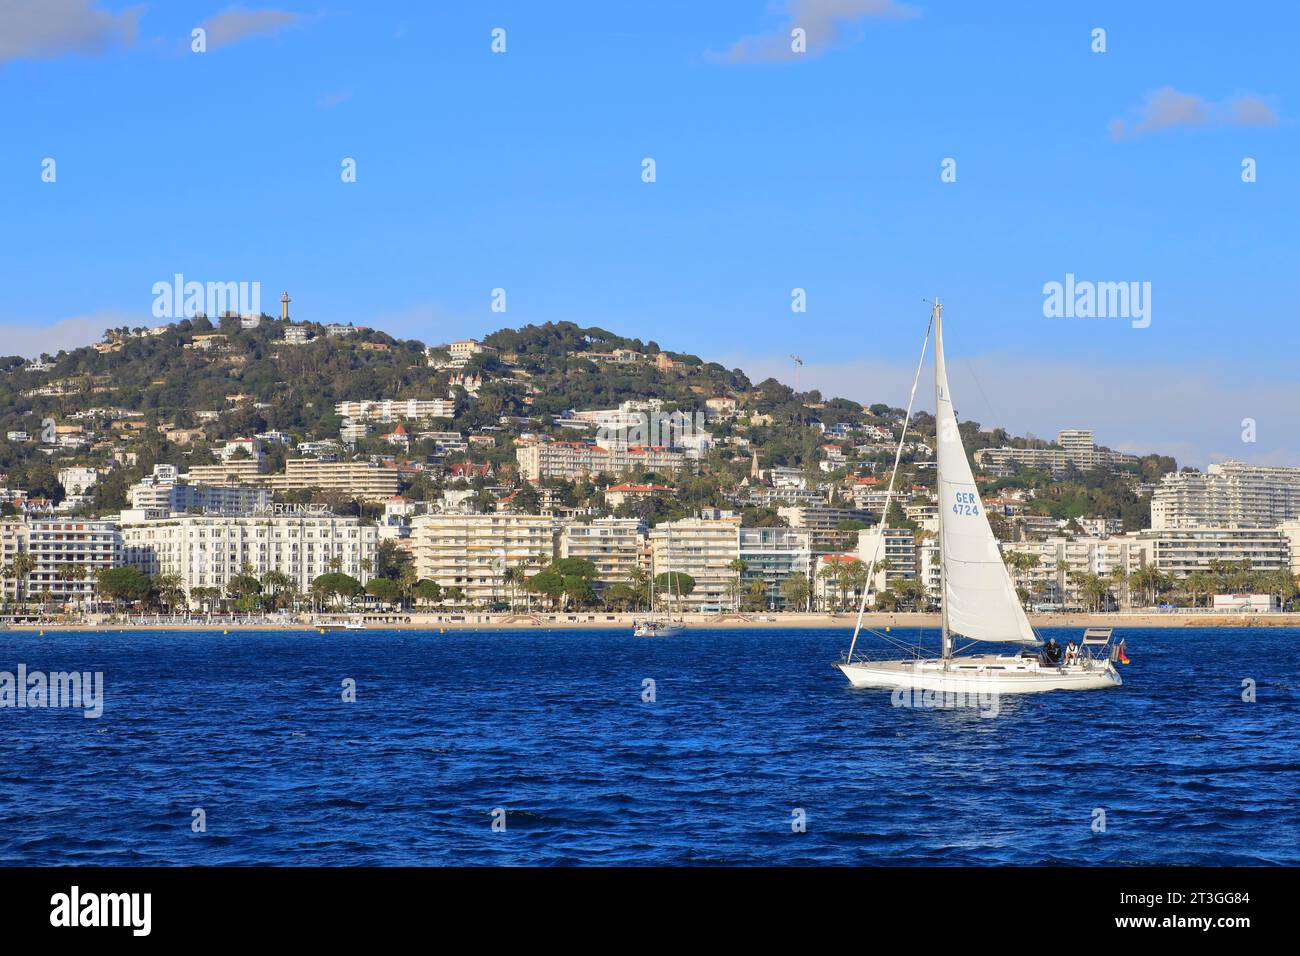 Francia, Alpi marittime, Cannes, barca a vela nella baia con l'hotel Martinez sullo sfondo Foto Stock